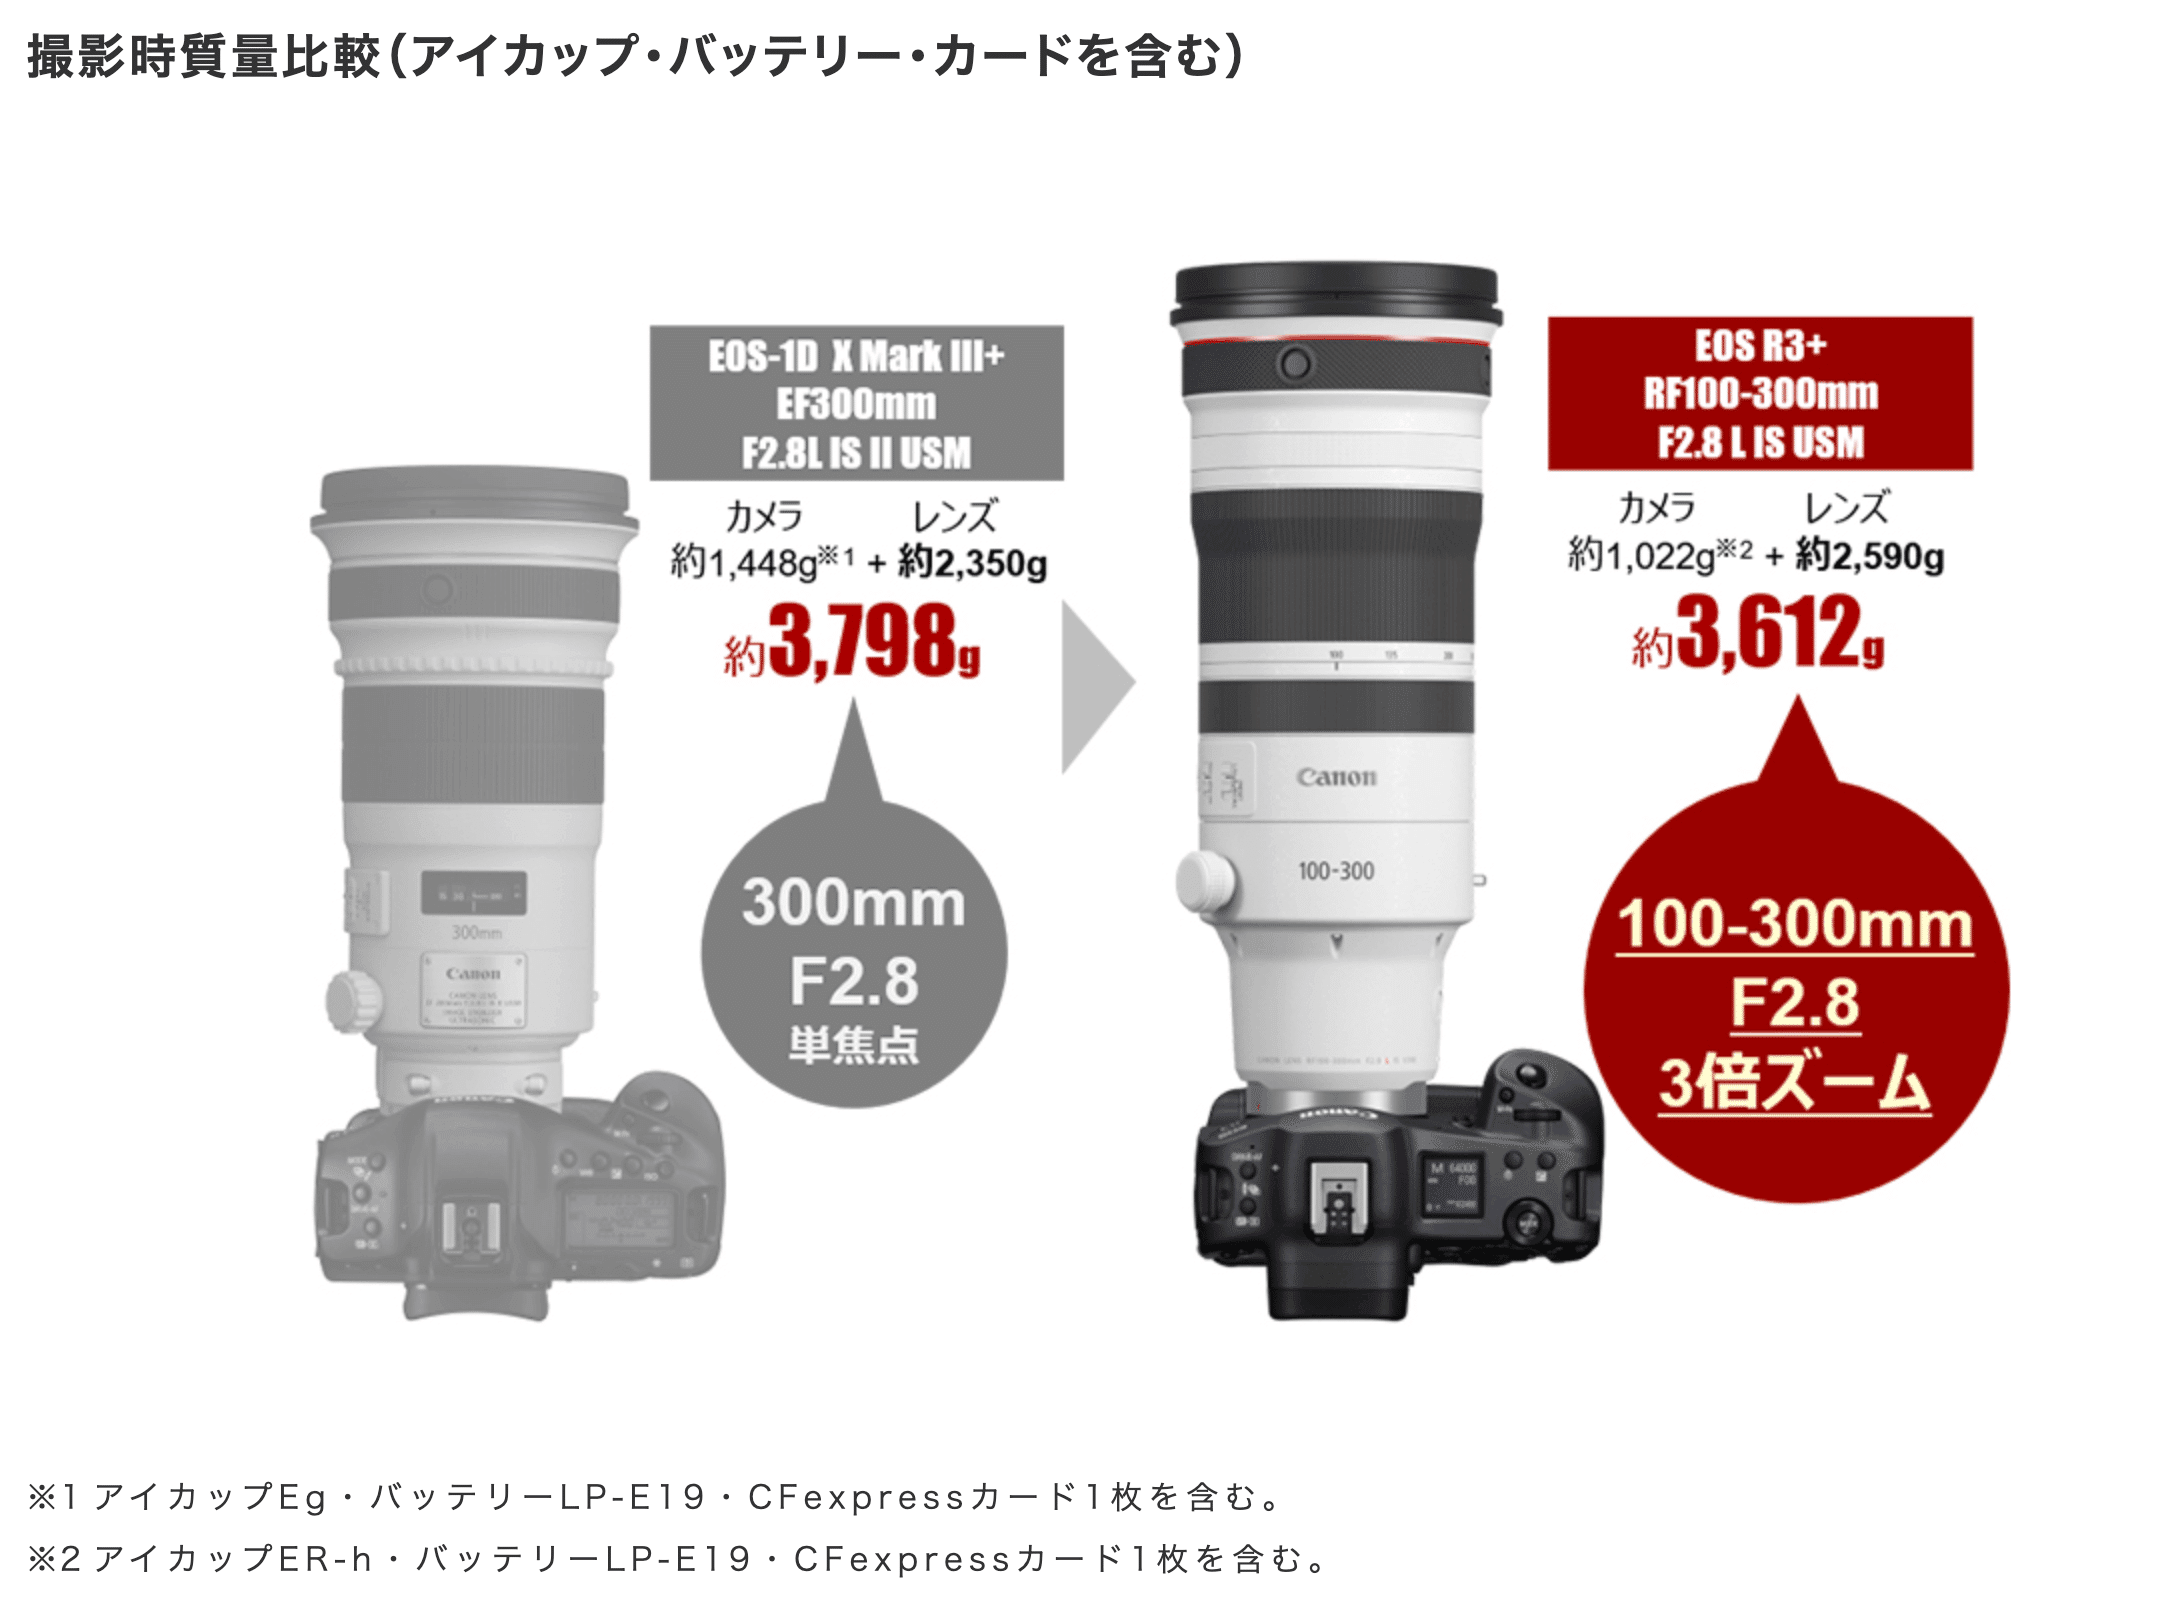 キャノン EF300mm F2.8L IS USM 単焦点望遠レンズ サンニッパ - カメラ